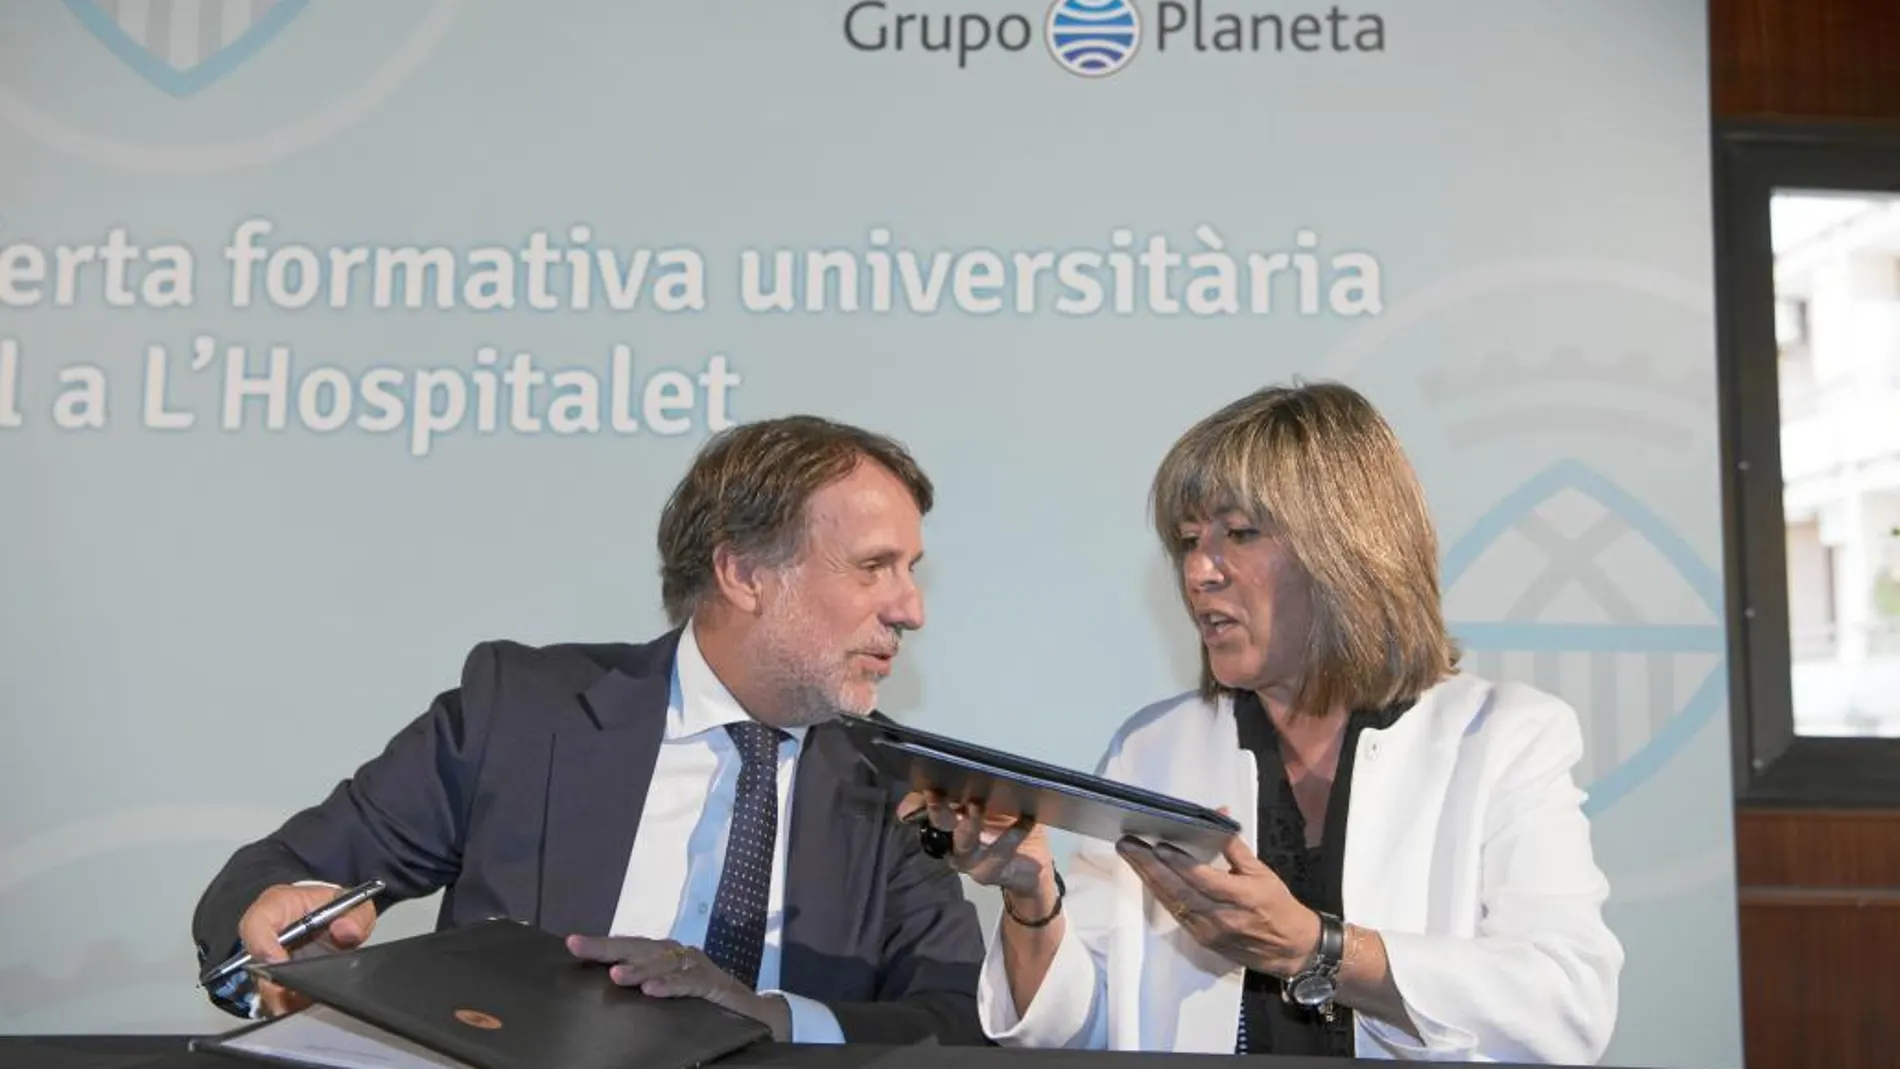 El presidente del Grupo Planeta, José Creuheras, insistió en fomentar el talento y el conocimiento